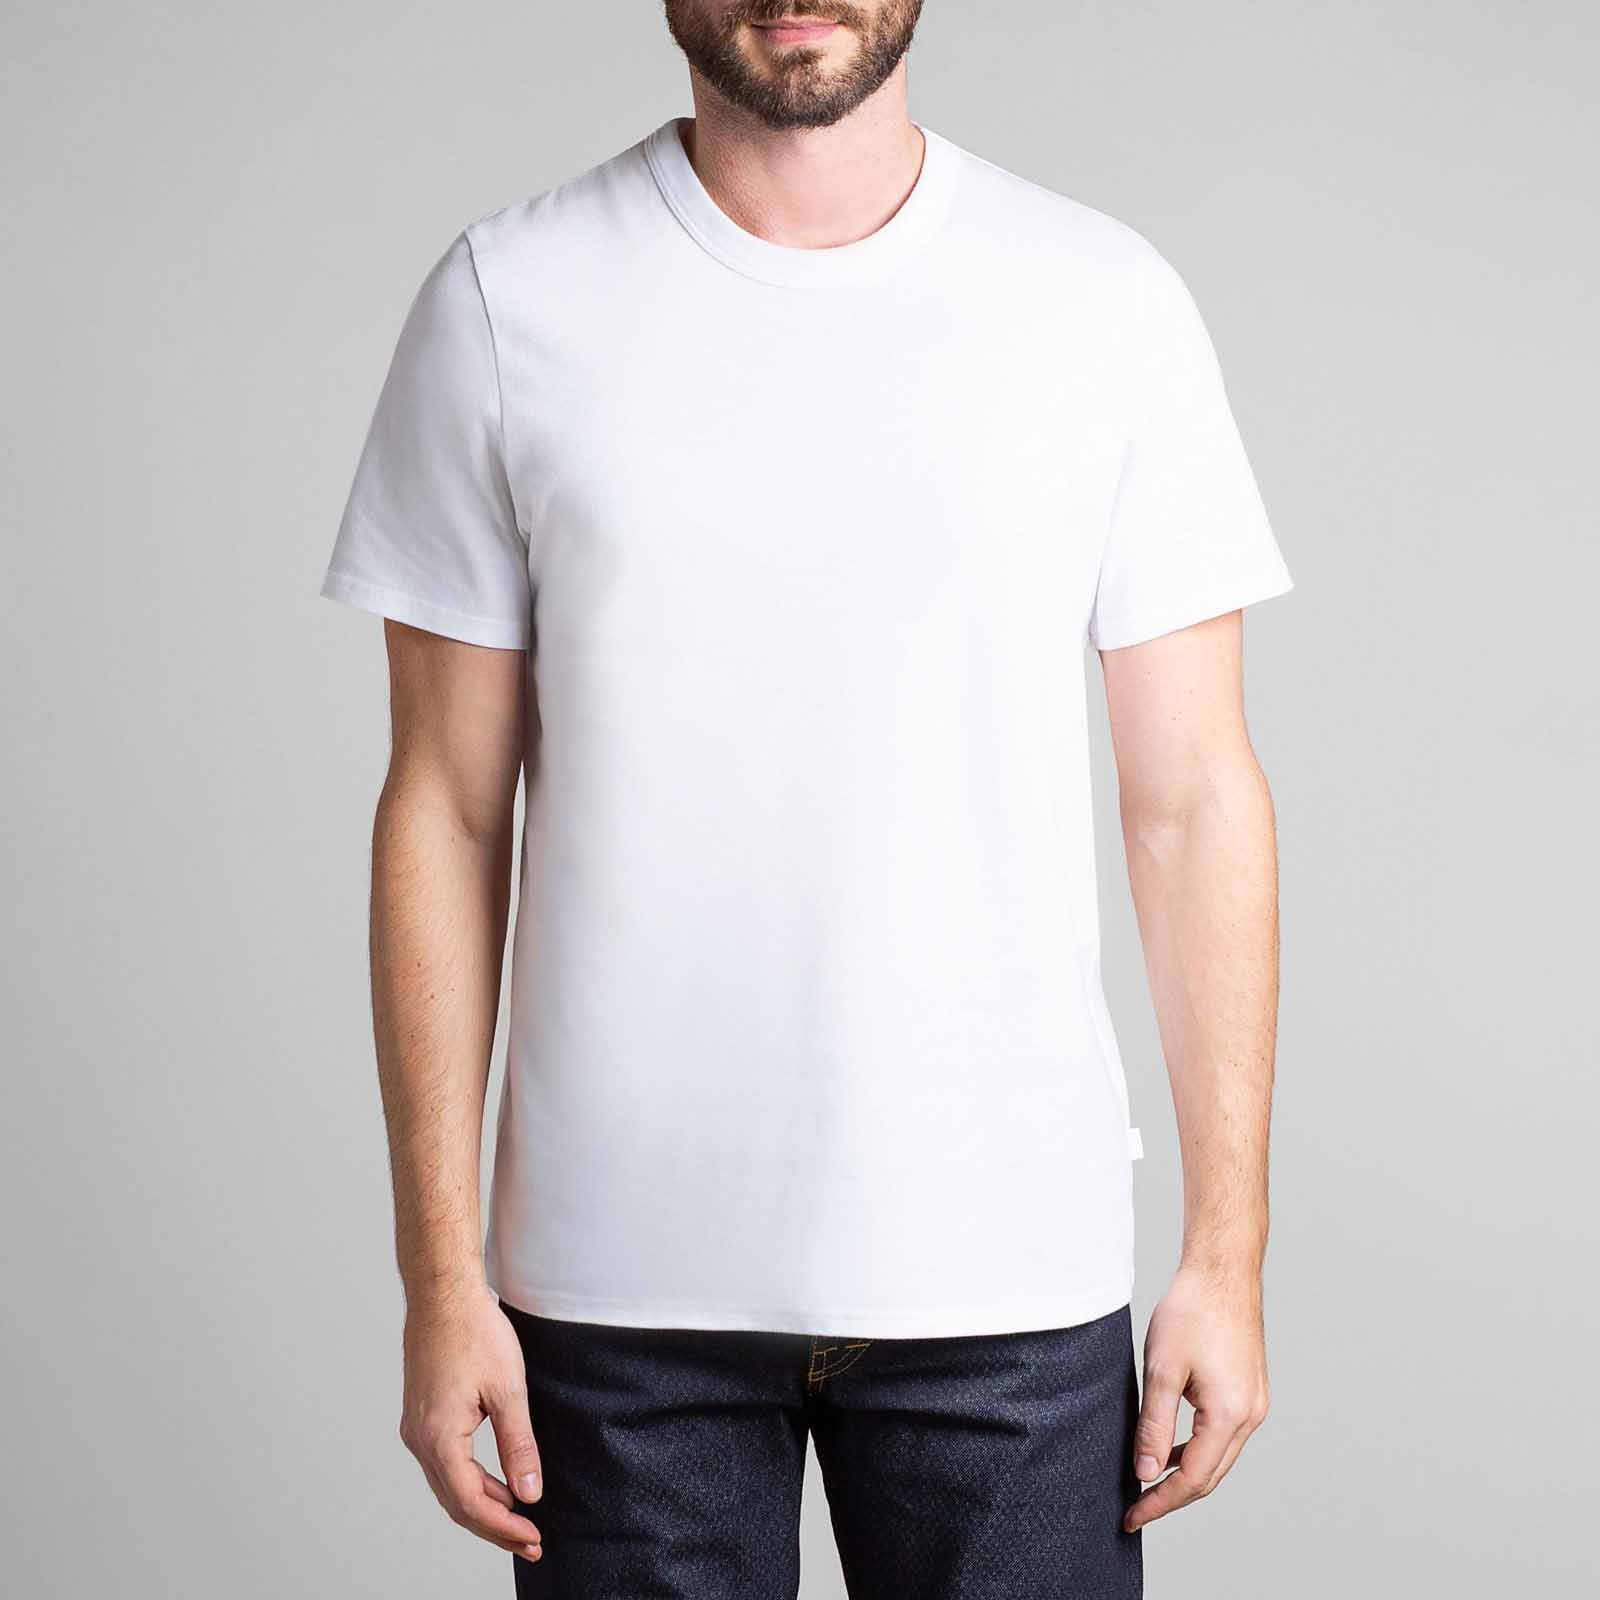 T-Shirt C'est Carré, Tee-shirt Homme